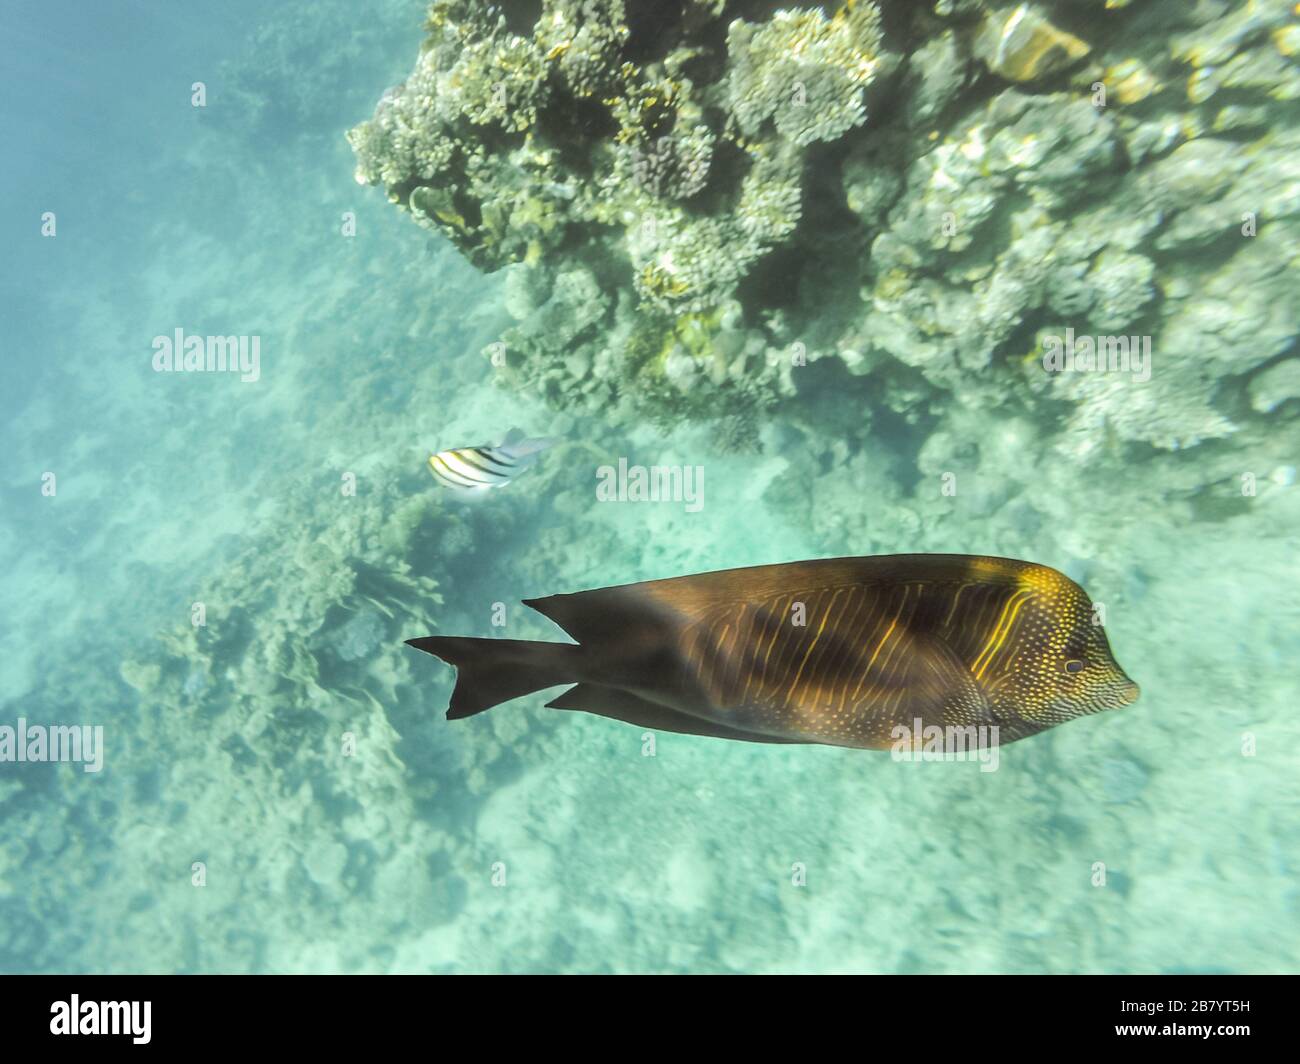 Fishes of the Red Sea, Egypt. Sailing Zebrasoma Desjardini (Zebrasoma desjardinii). Underwater shooting. Stock Photo